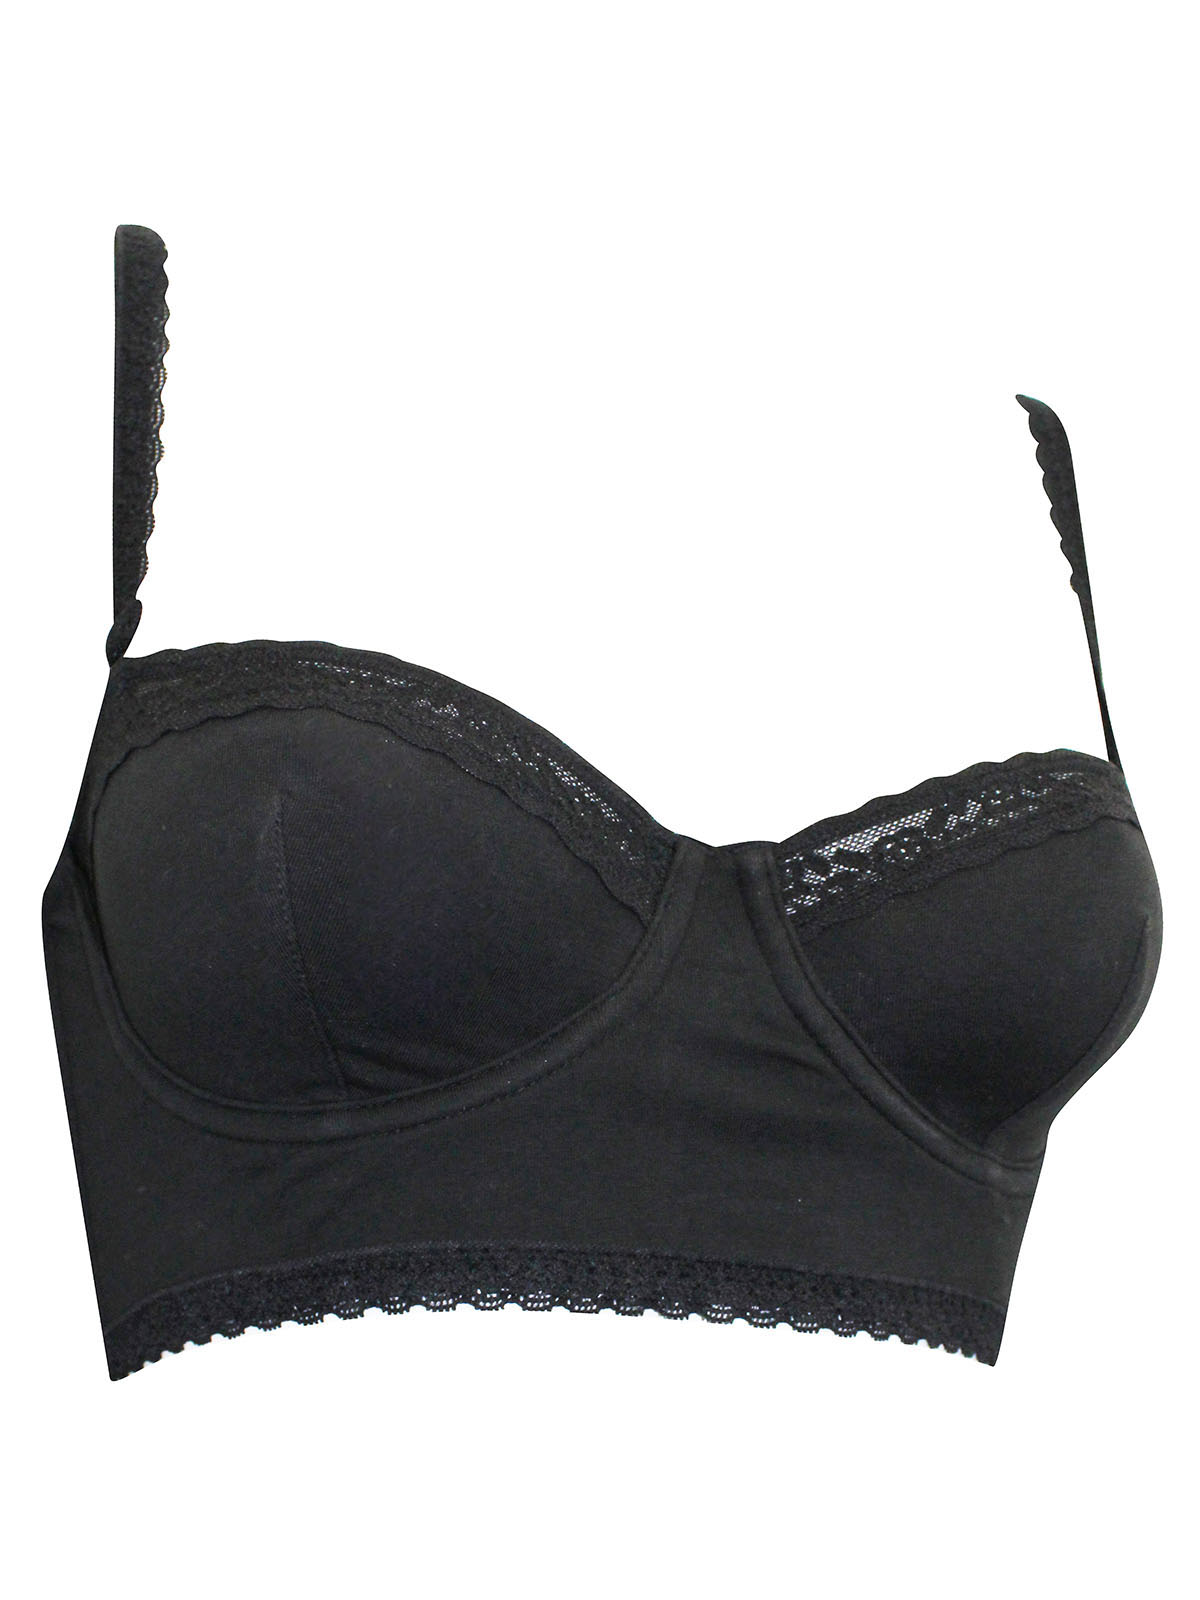 Victoria's Secret Body By Victoria Full Coverage Black Bra size 34C - $18 -  From Tara